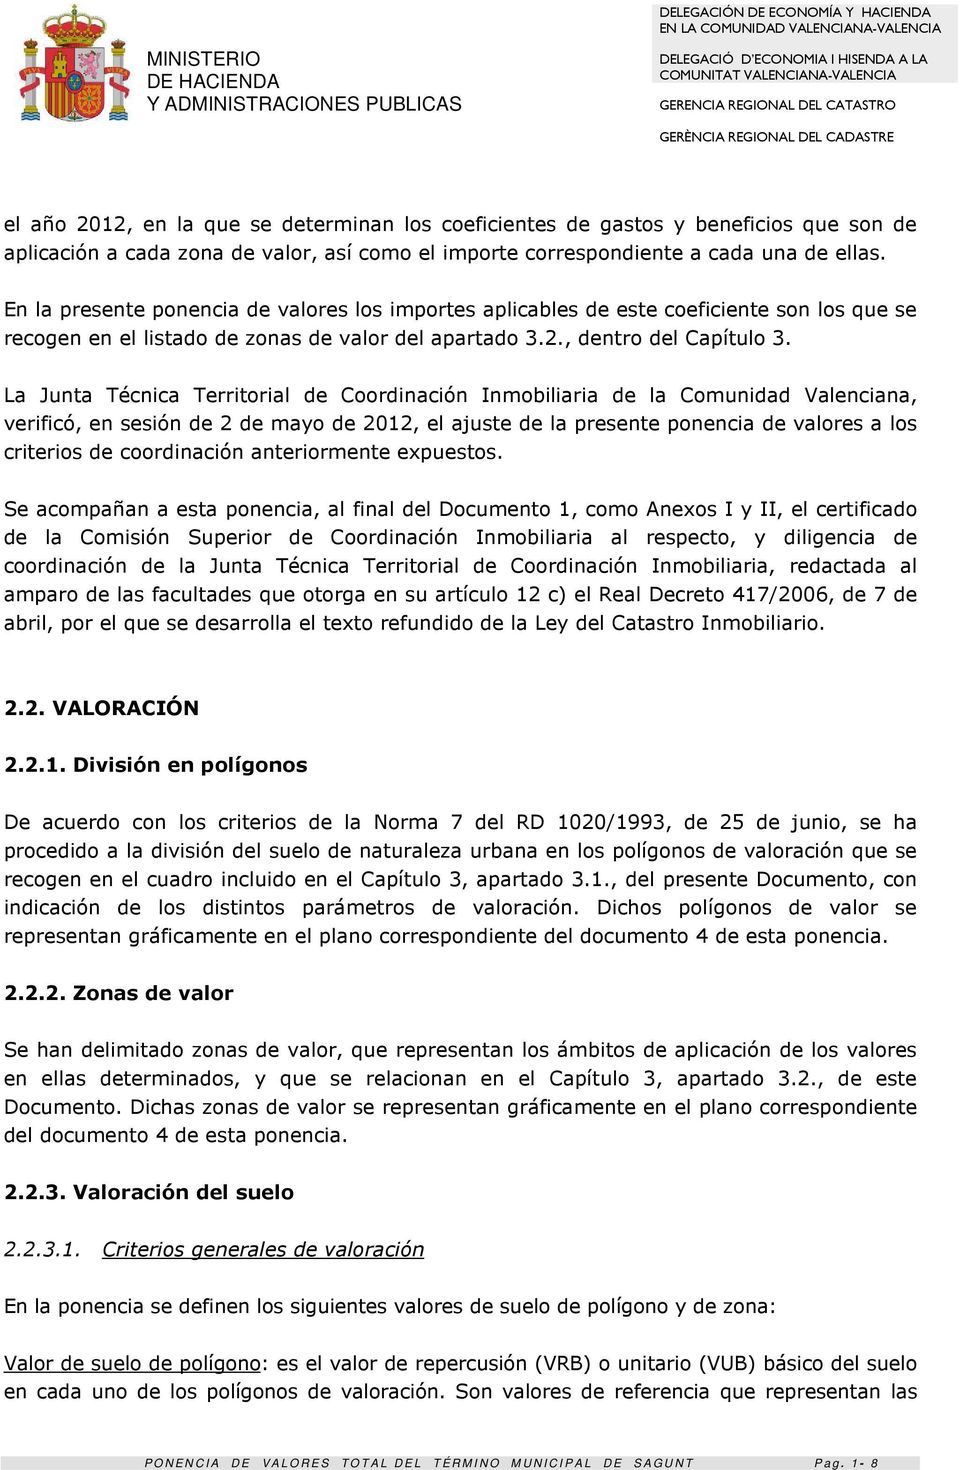 La Junta Técnica Territorial de Coordinación Inmobiliaria de la Comunidad Valenciana, verificó, en sesión de 2 de mayo de 2012, el ajuste de la presente ponencia de valores a los criterios de